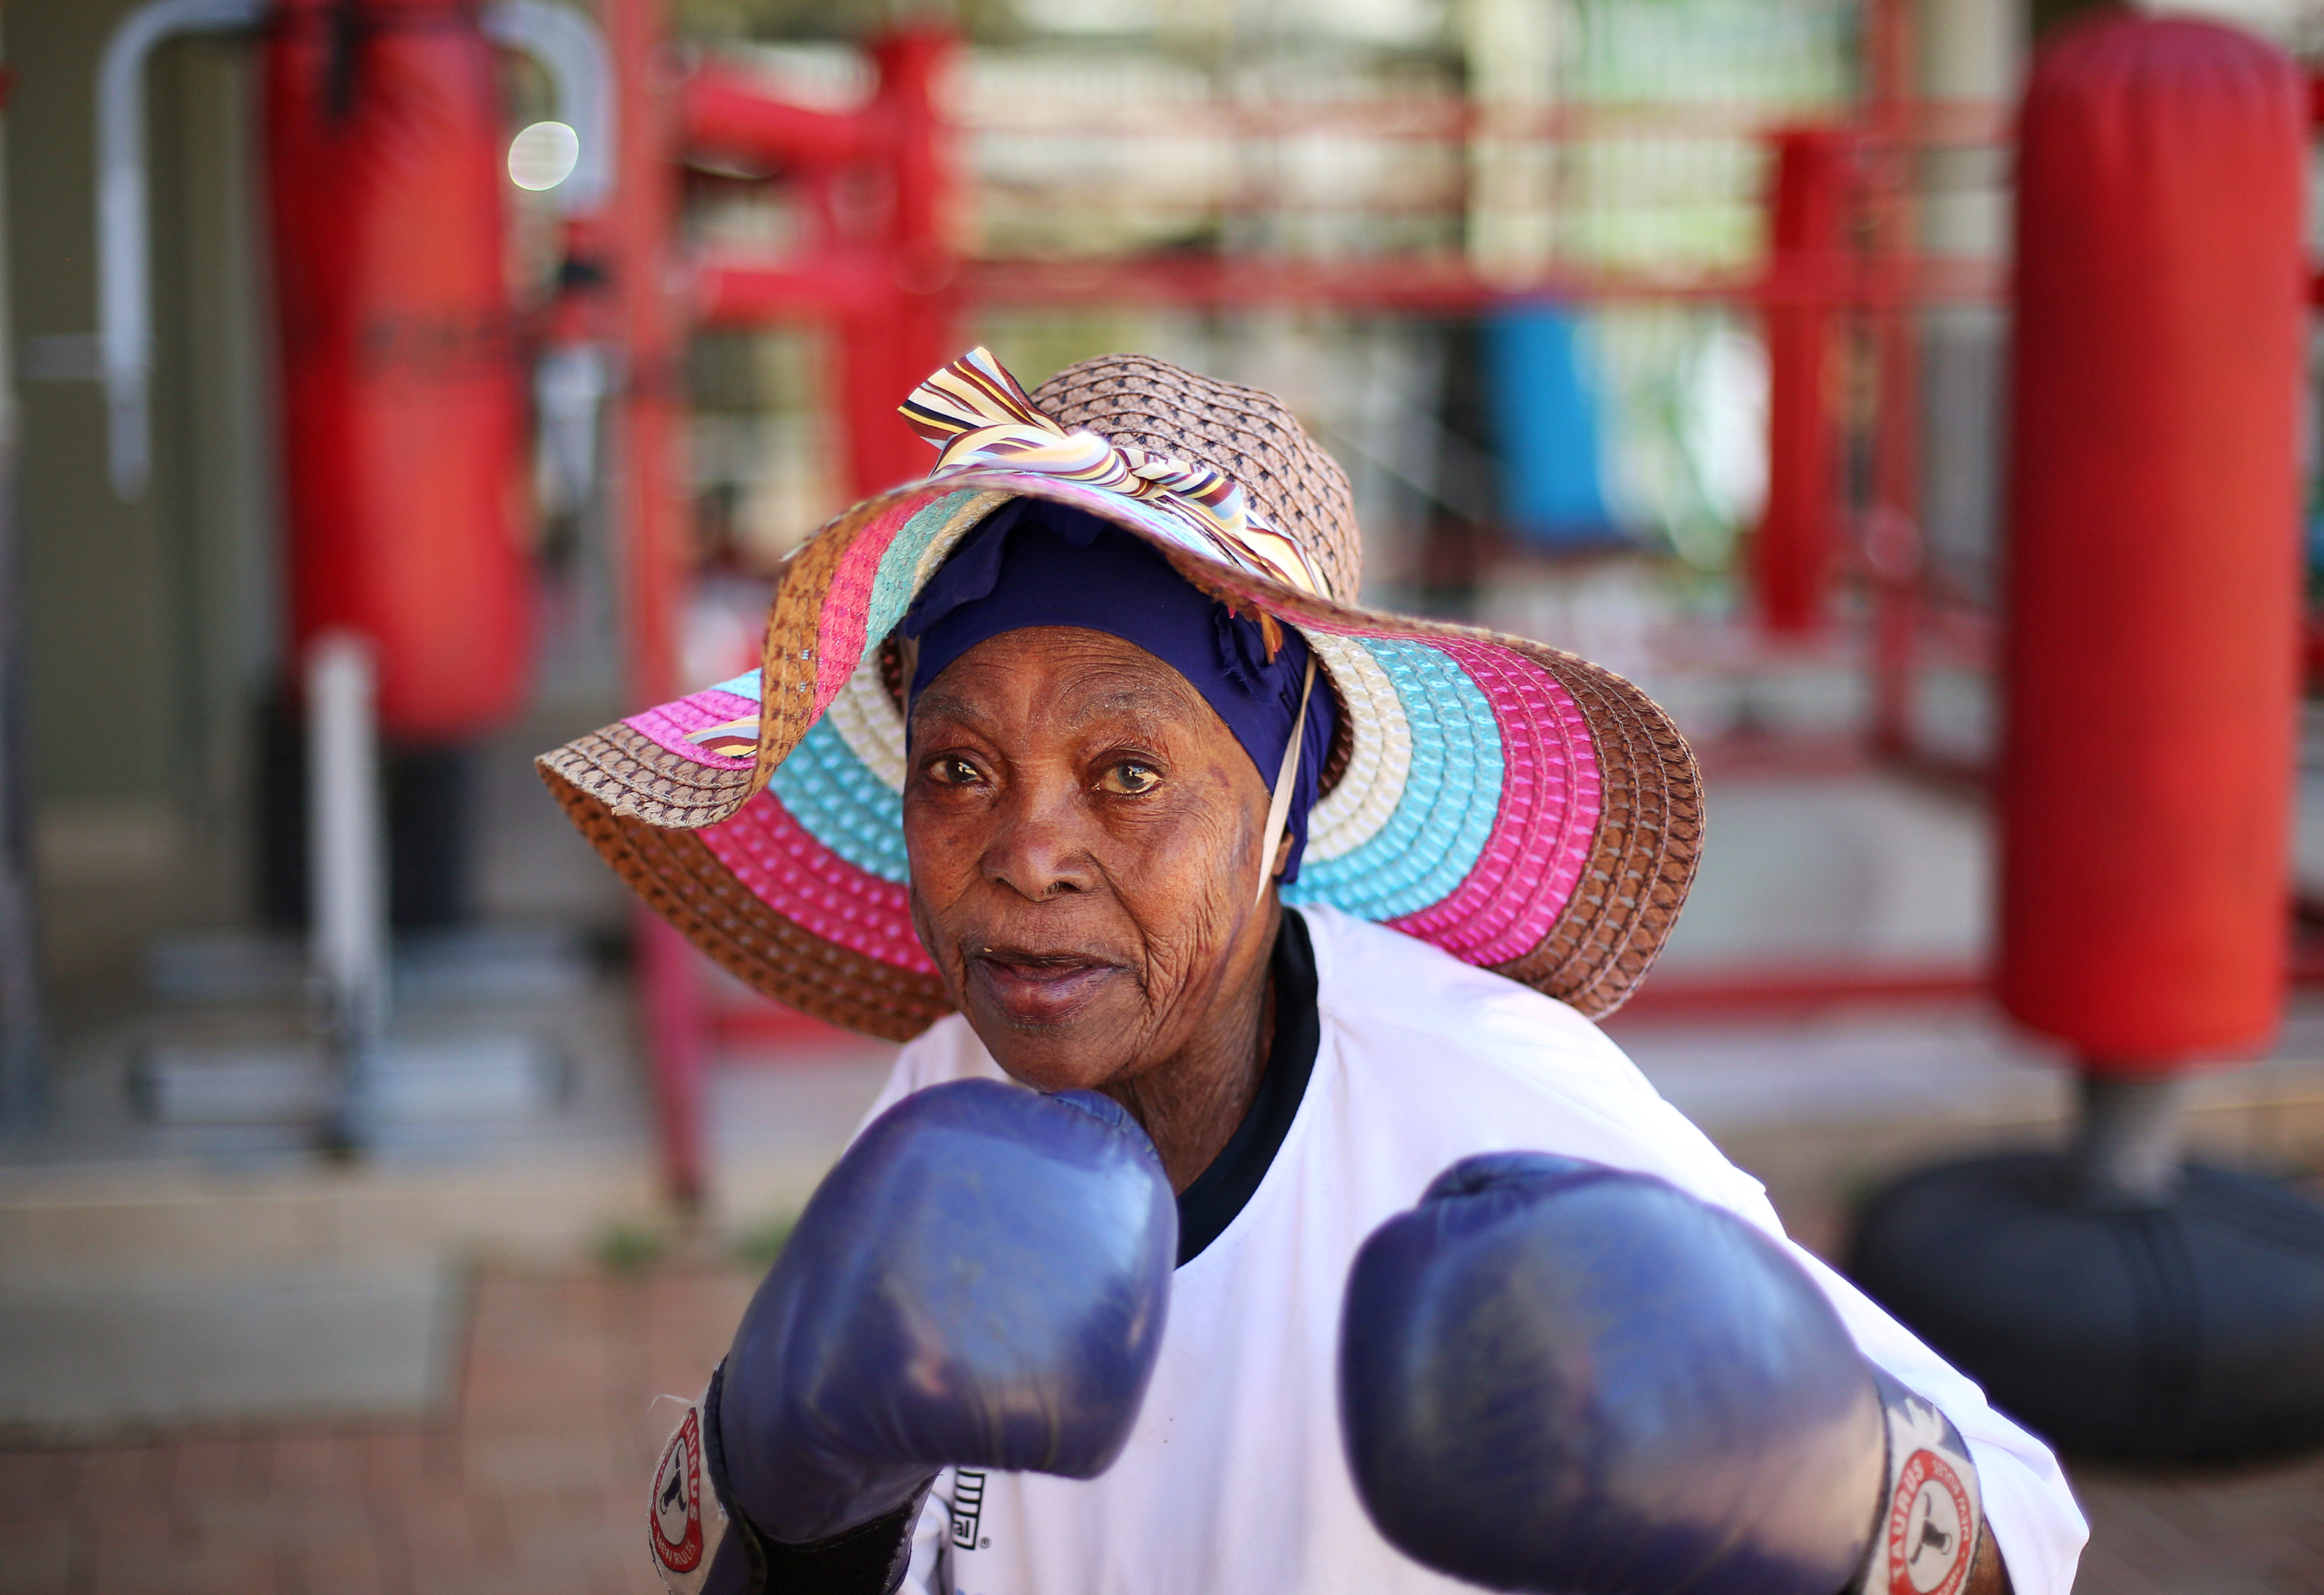 ملاكمة يفوق عمرها الـ70 عامًا فى جنوب أفريقيا